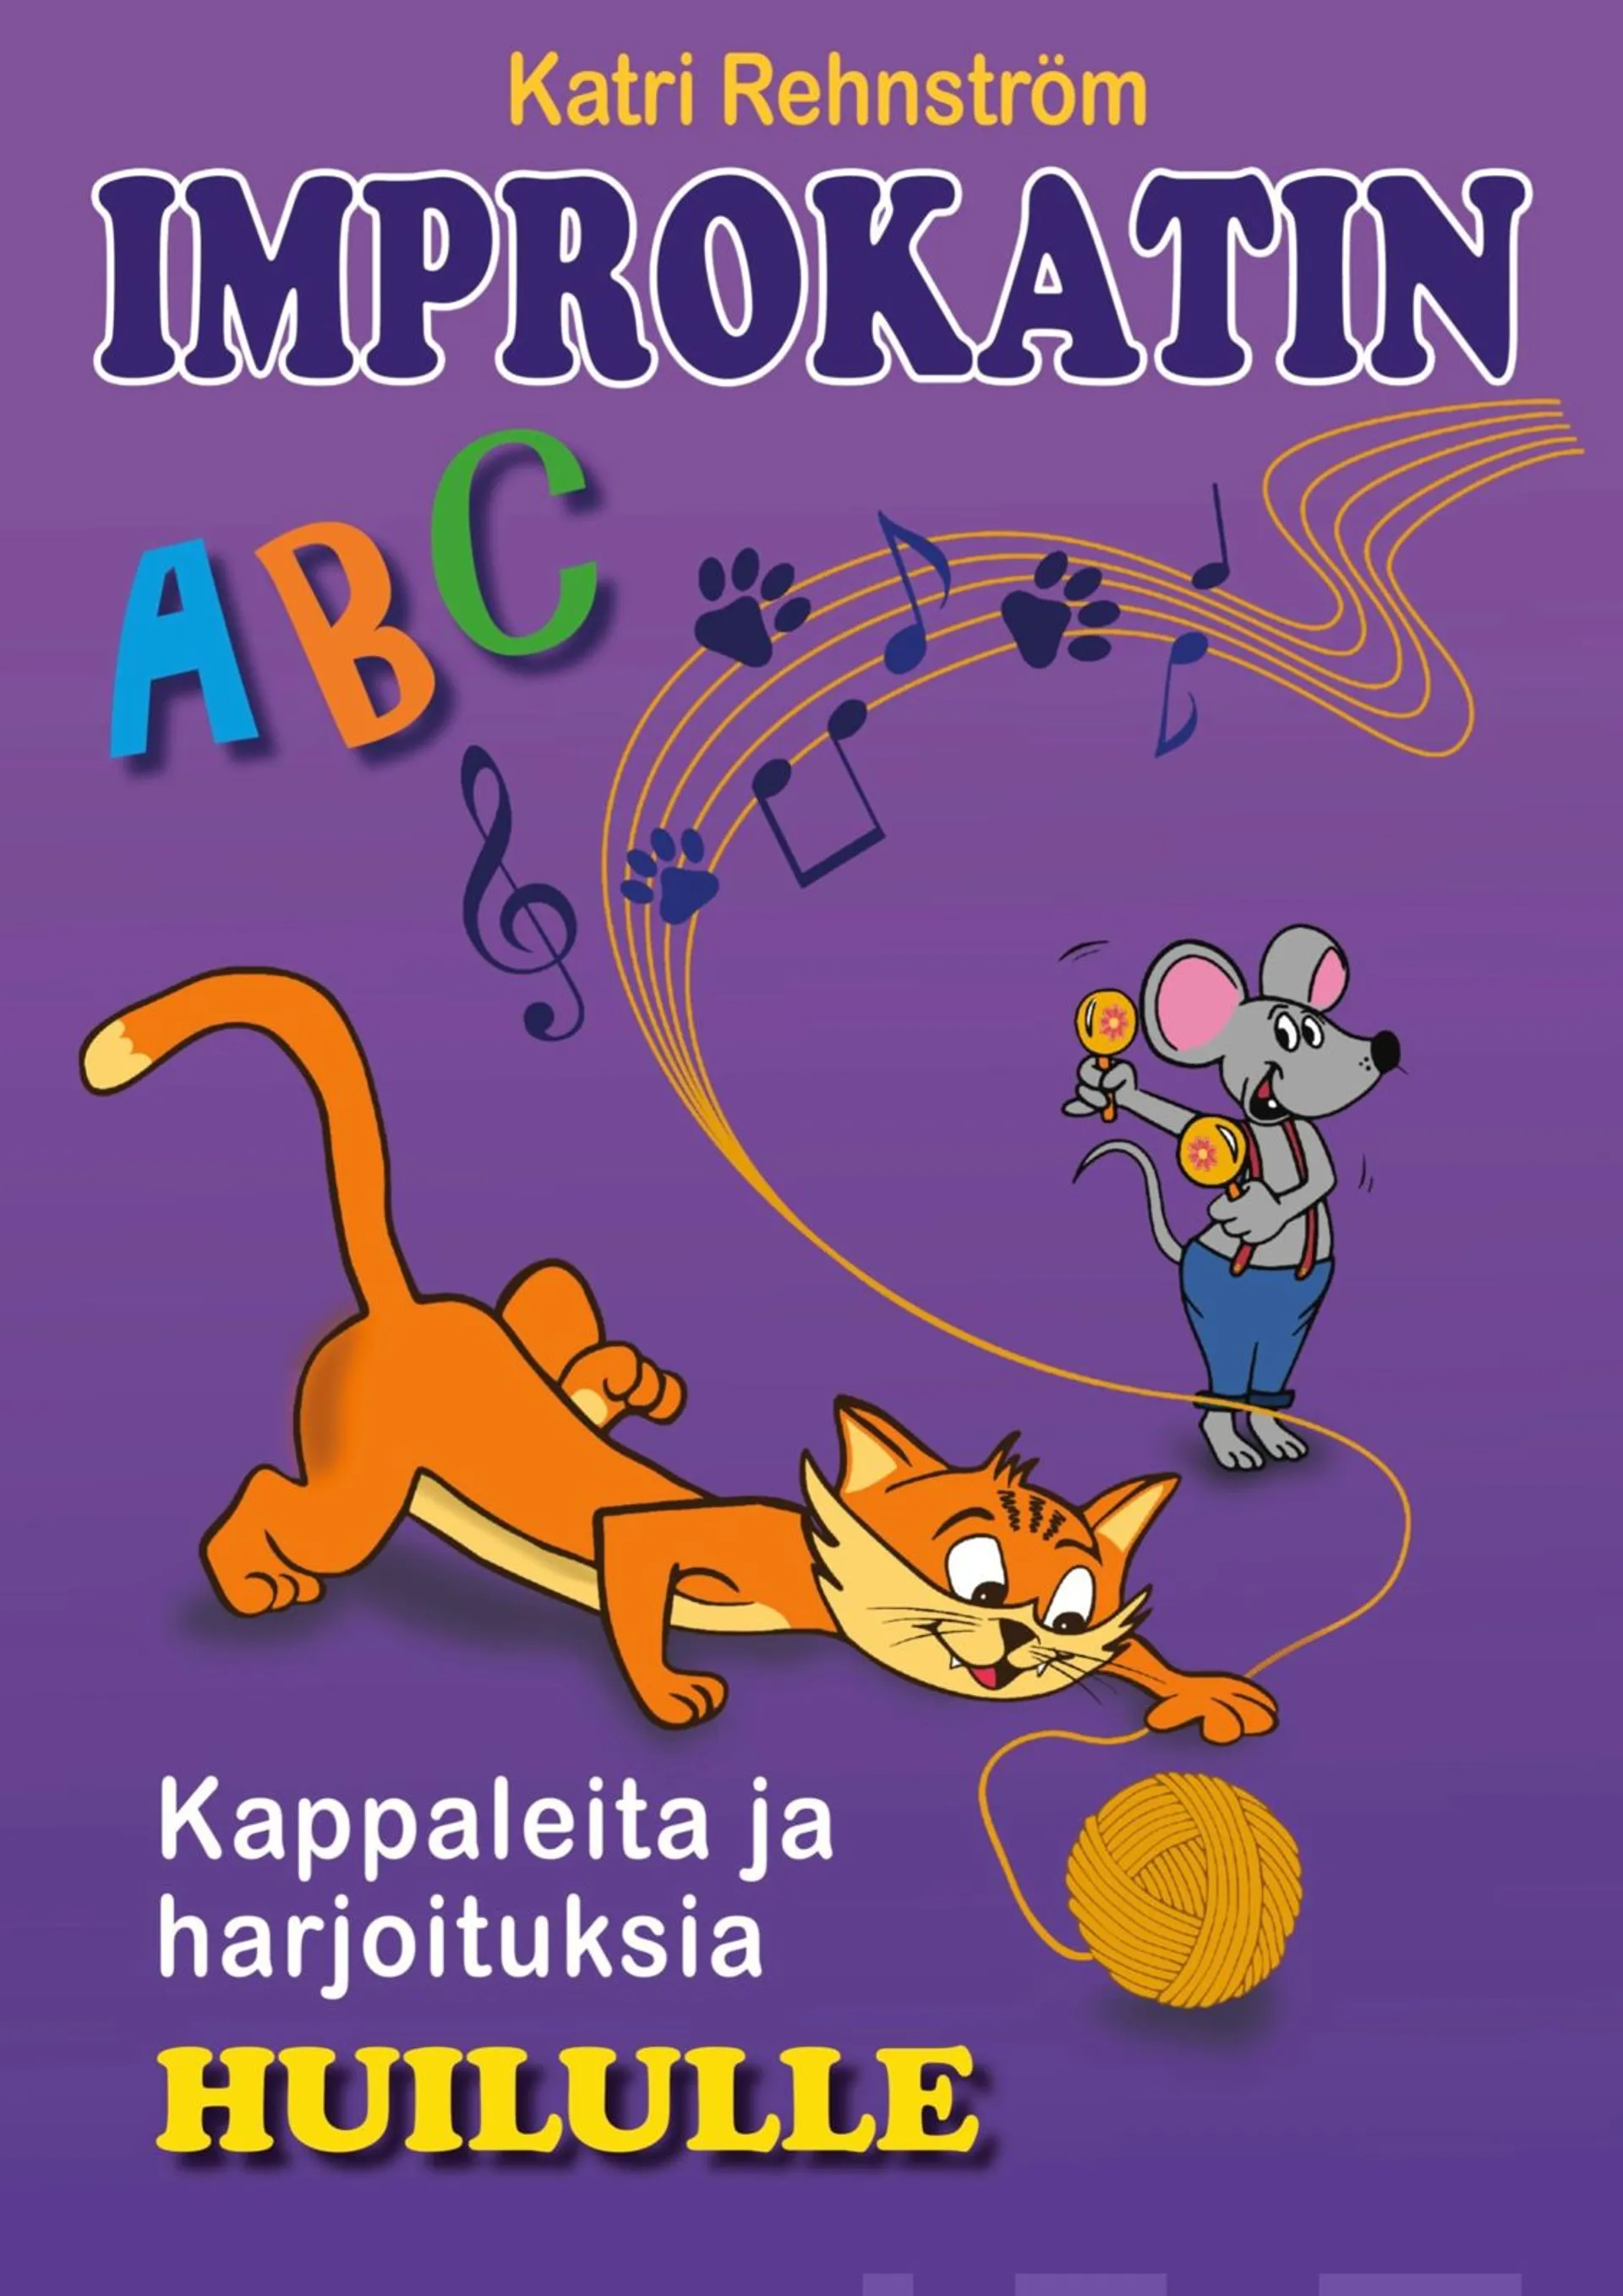 Rehnström, Improkatin ABC - Kappaleita ja harjoituksia huilulle